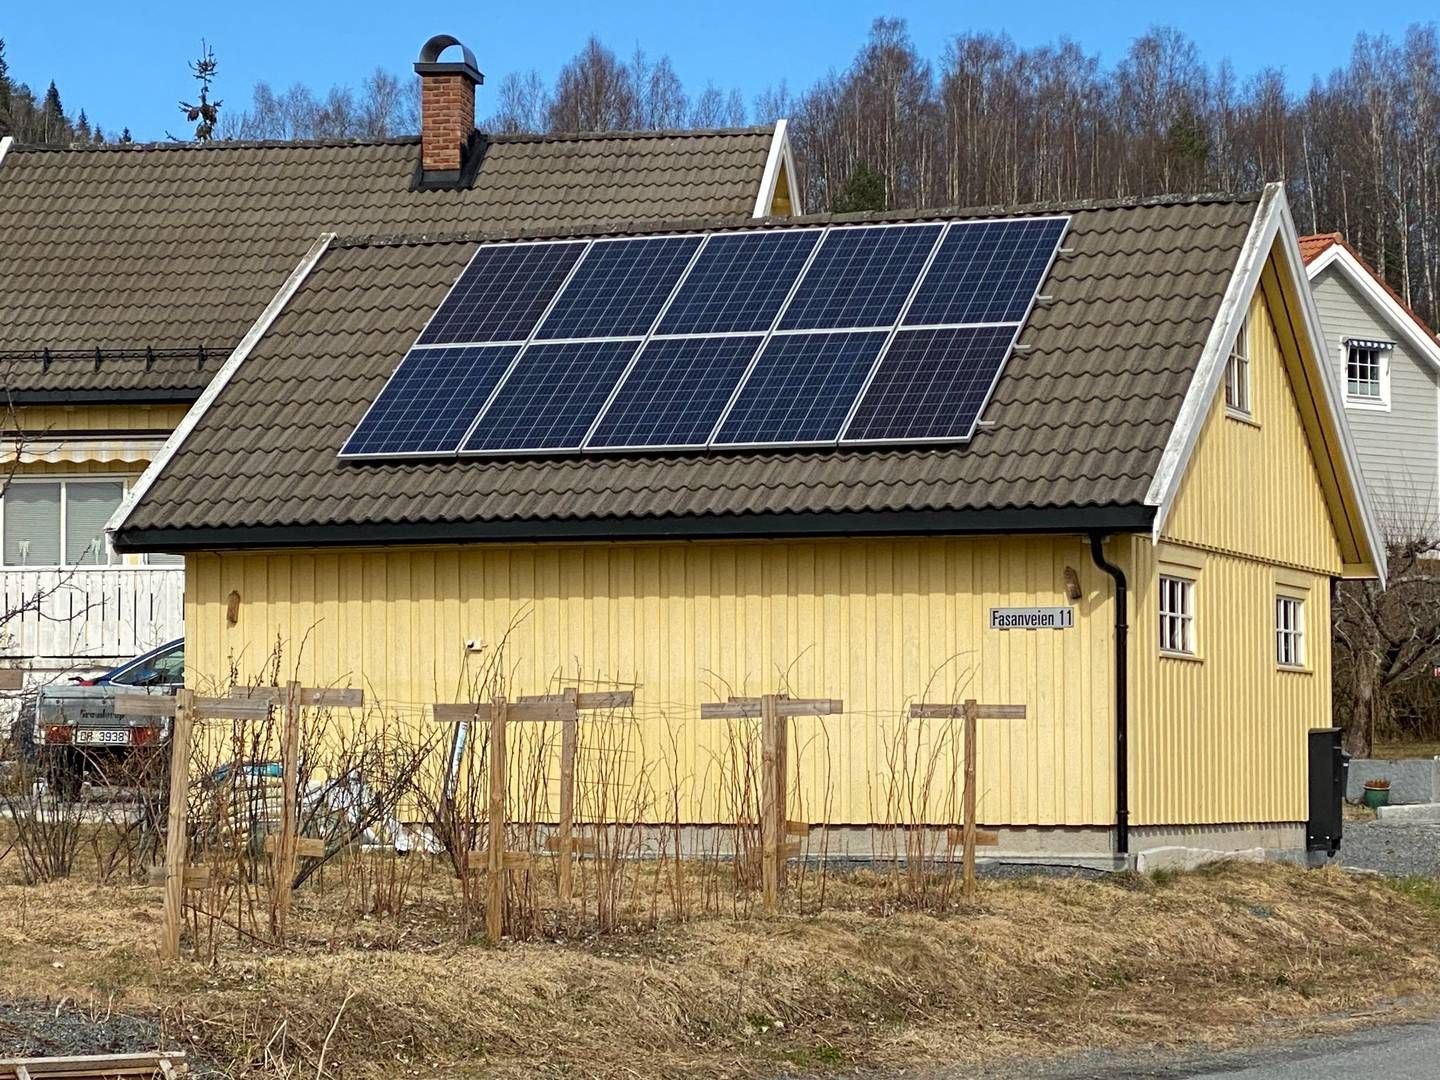 0,12 PROSENT: Solenergien satte ny produksjonsrekord allerede i april måned, men den utgjør fortsatt en veldig liten andel av den totale norske kraftproduksjonen. | Foto: Anders Lie Brenna